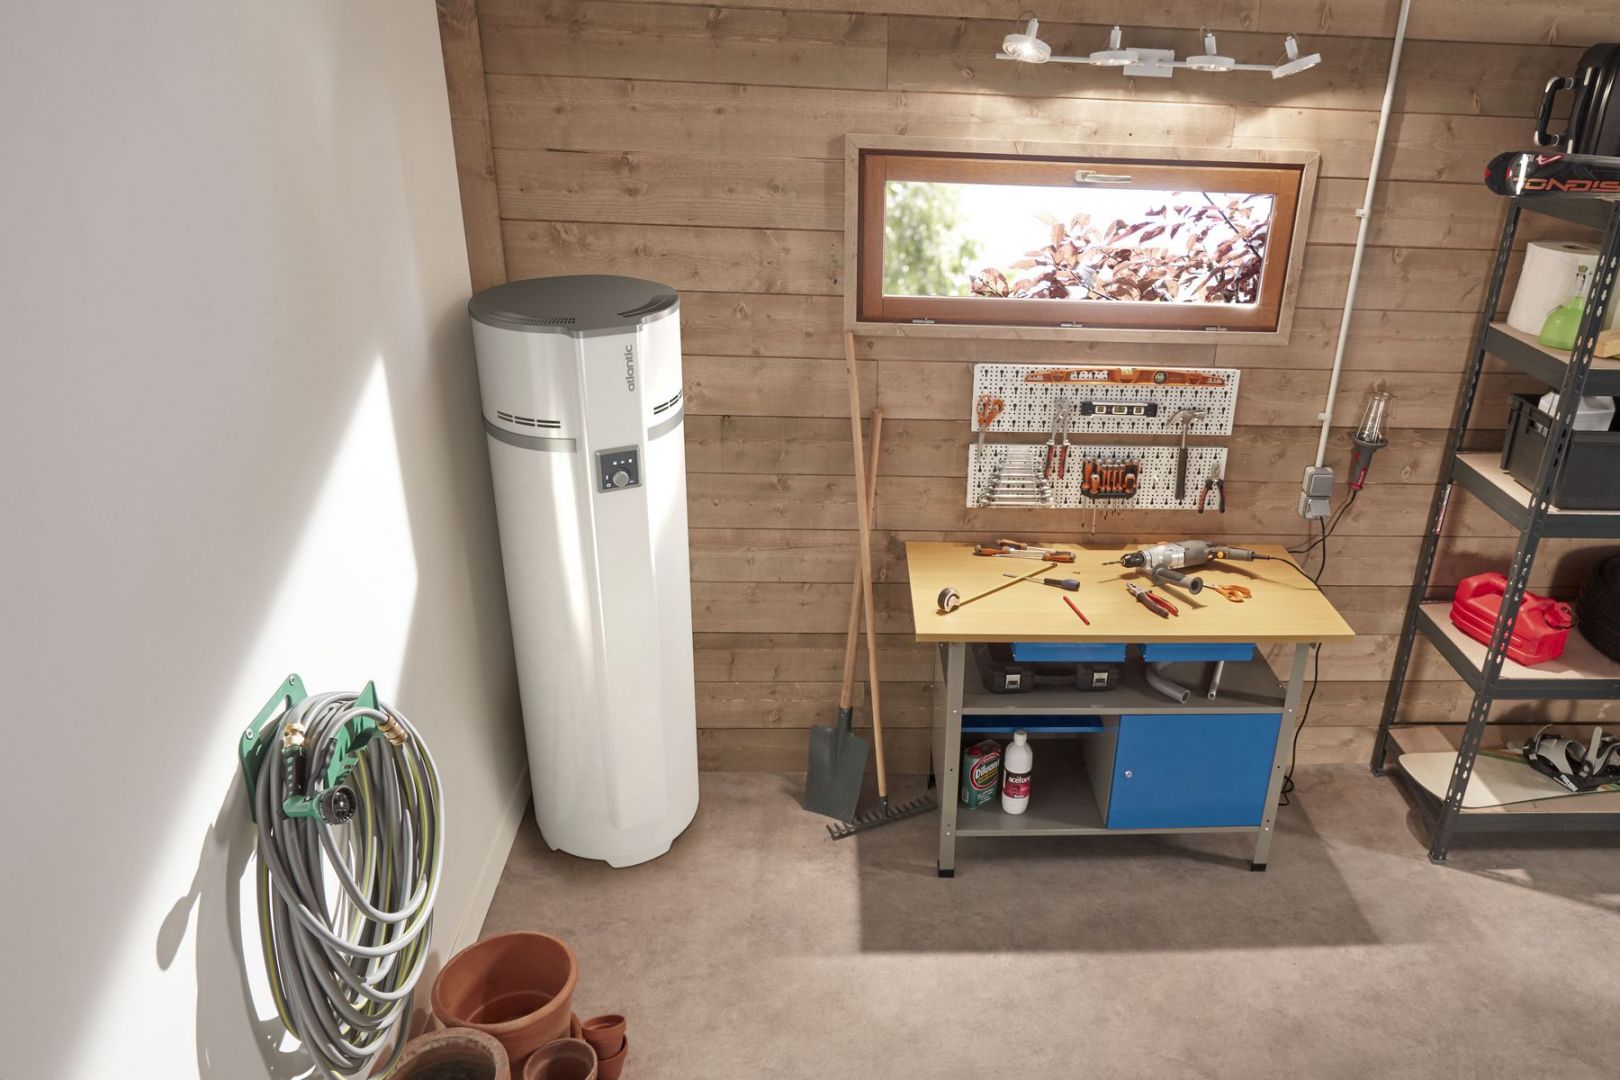 Экологический тренд систем отопления включает термодинамические водонагреватели, которые используют бесплатную энергию из окружающего воздуха - в гараже или подвале.  Фото  Атлантическая Польша